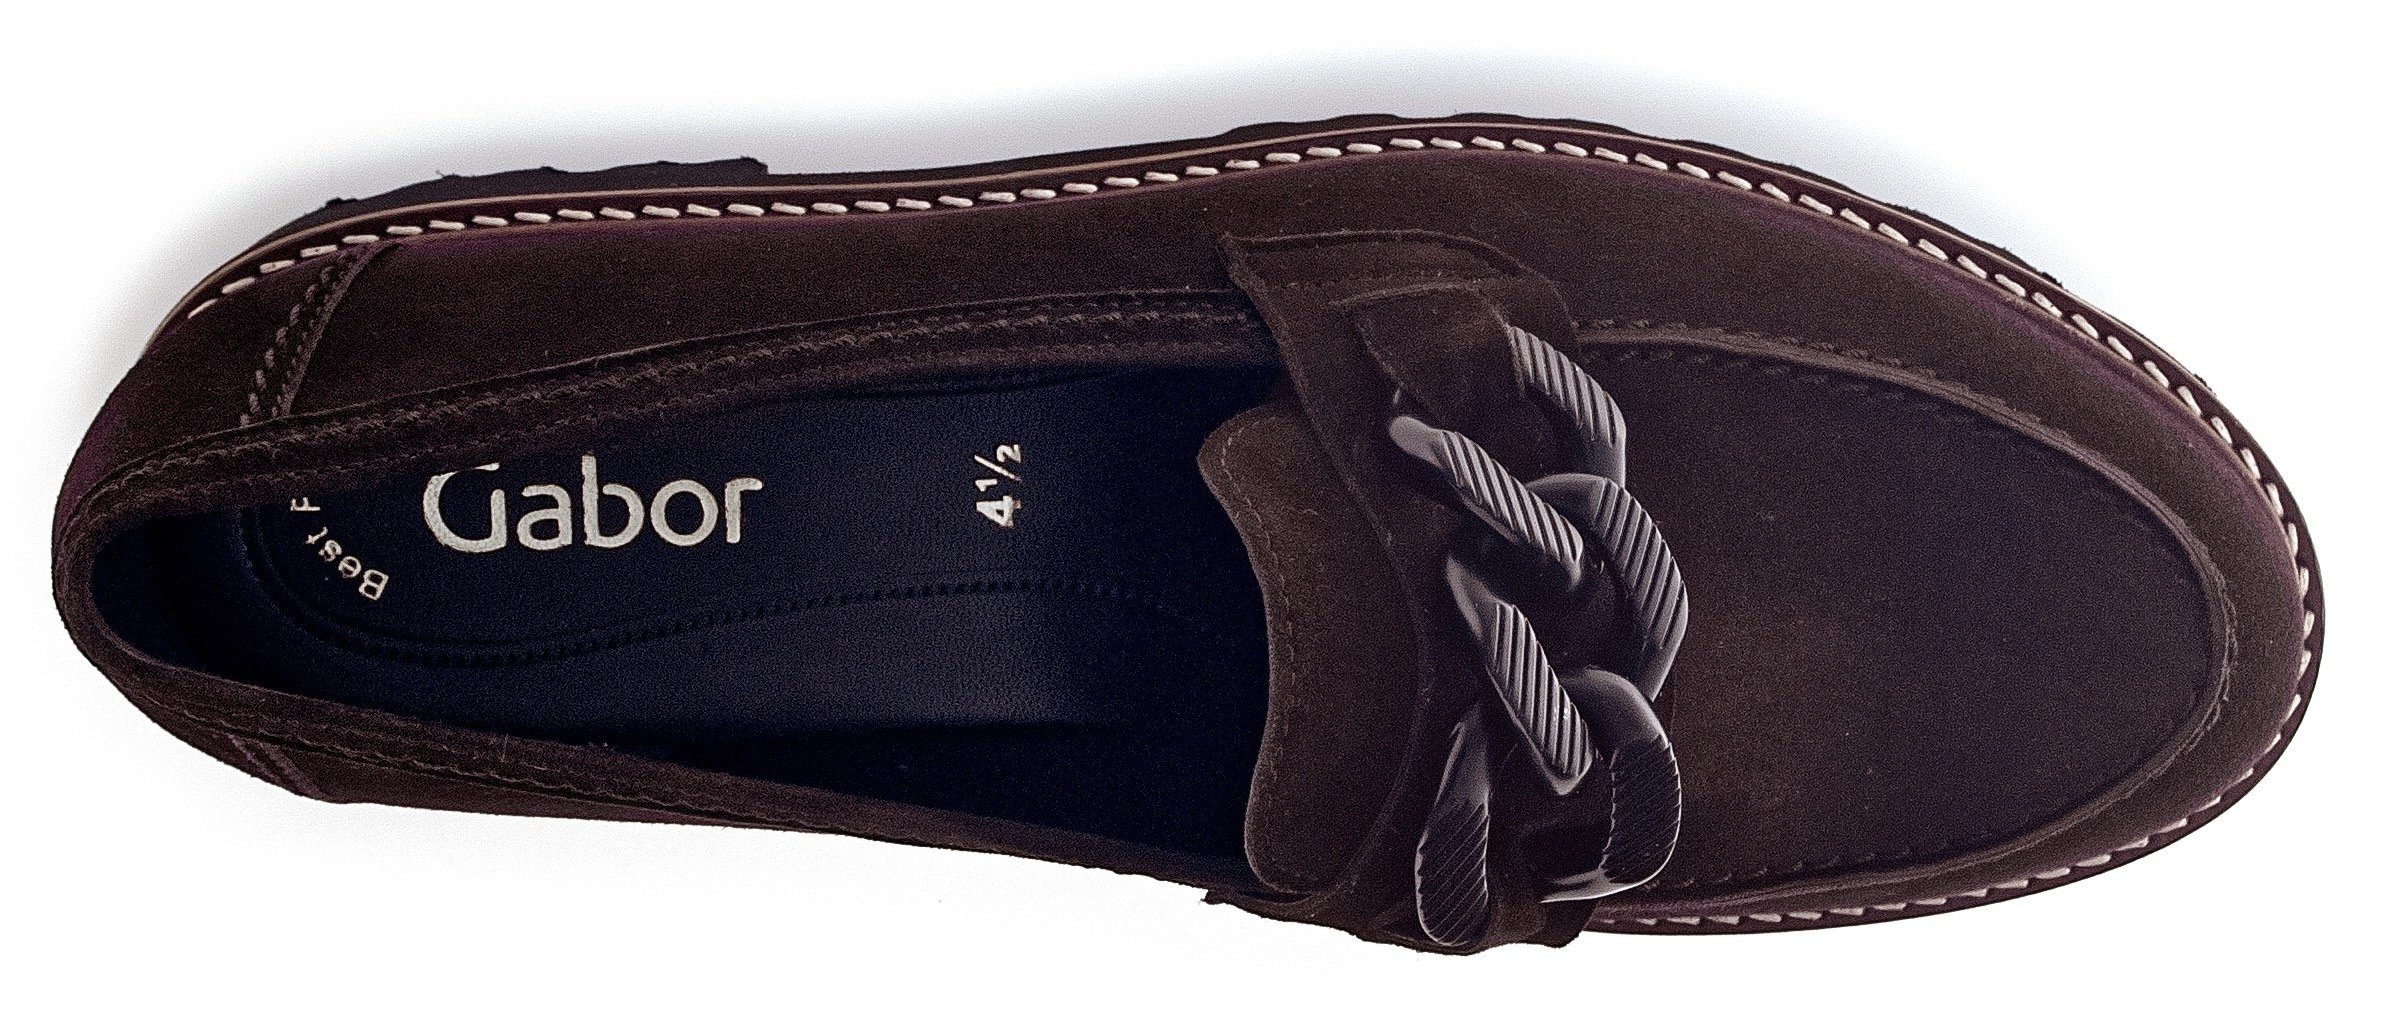 Best Gabor Fitting-Ausstattung dunkelbraun-schwarz Slipper mit